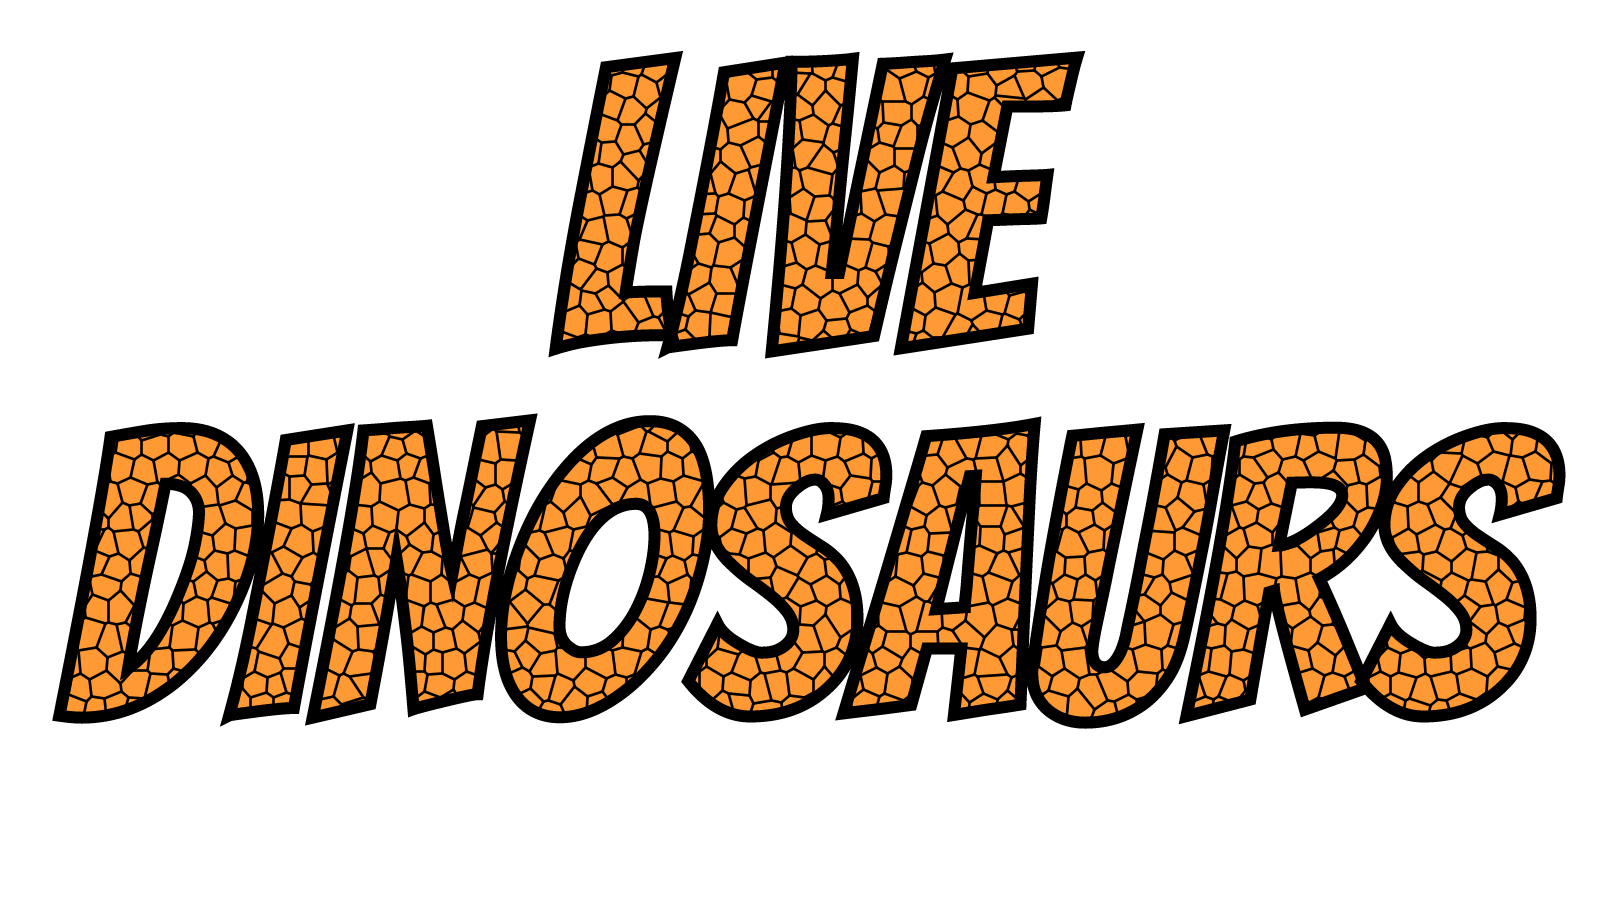 Livedinosaurs - Com - Illustration - HD Wallpaper 